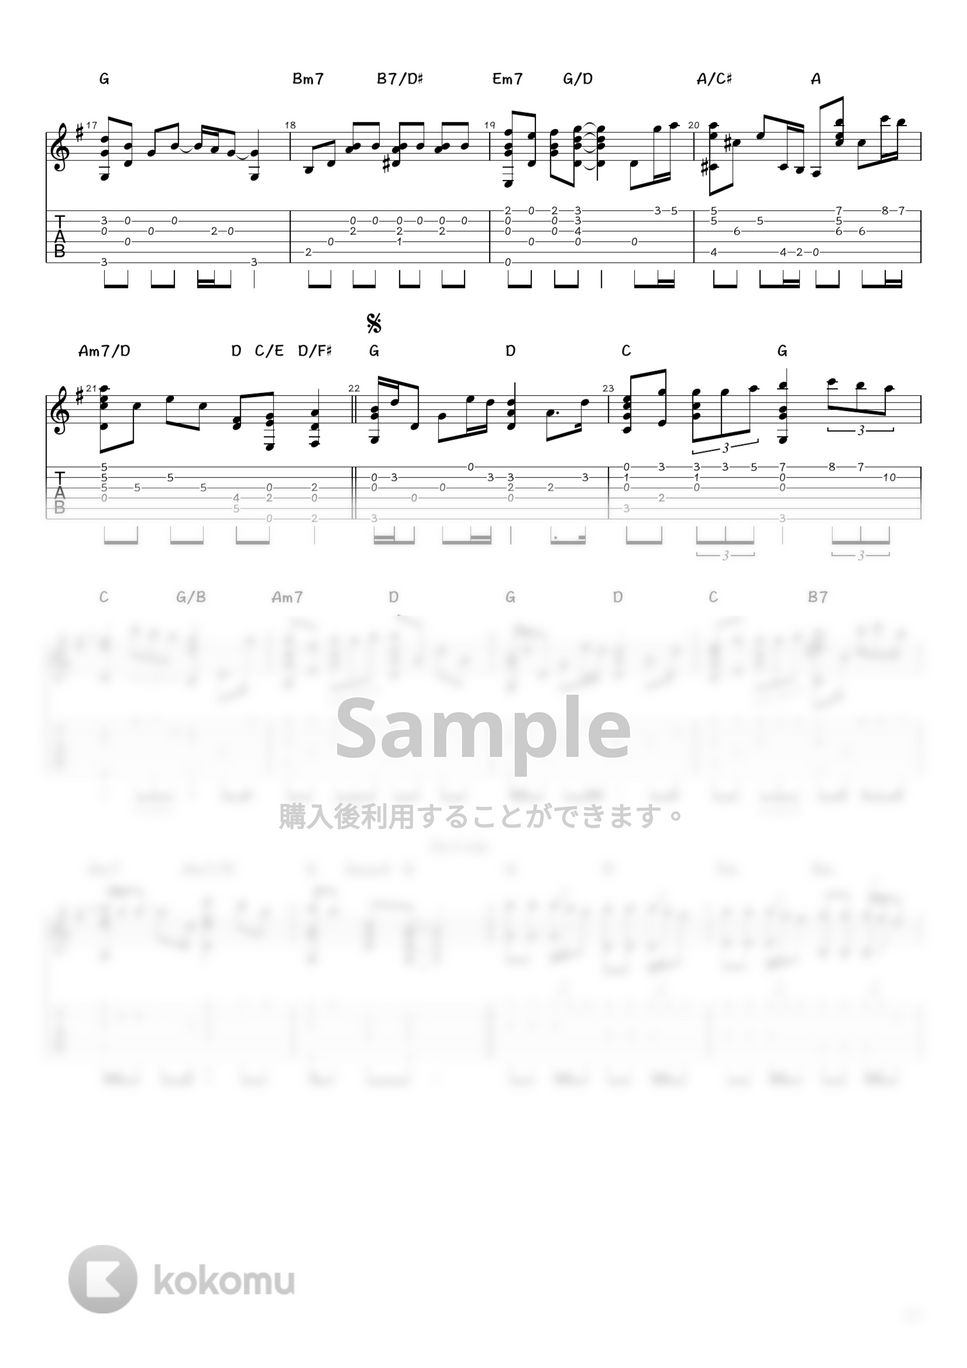 あいみょん - 裸の心 (ソロギター / タブ譜) by 井上さとみ